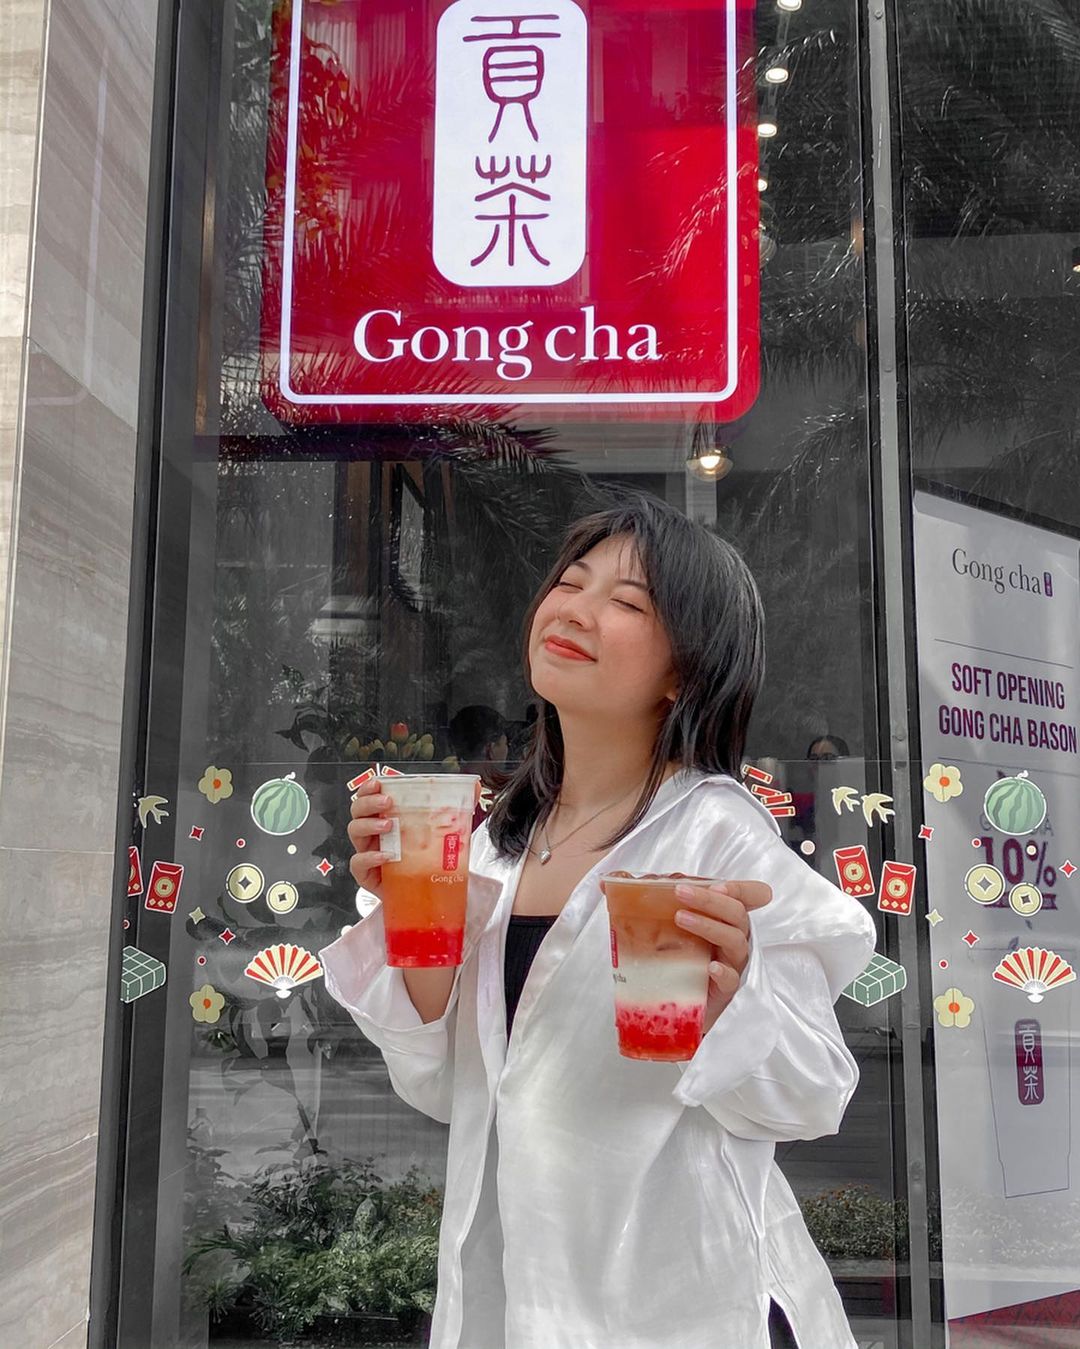 Mê mệt với Trà sữa Gongcha - Vị trà Đài Loan thơm ngon tuyệt hảo